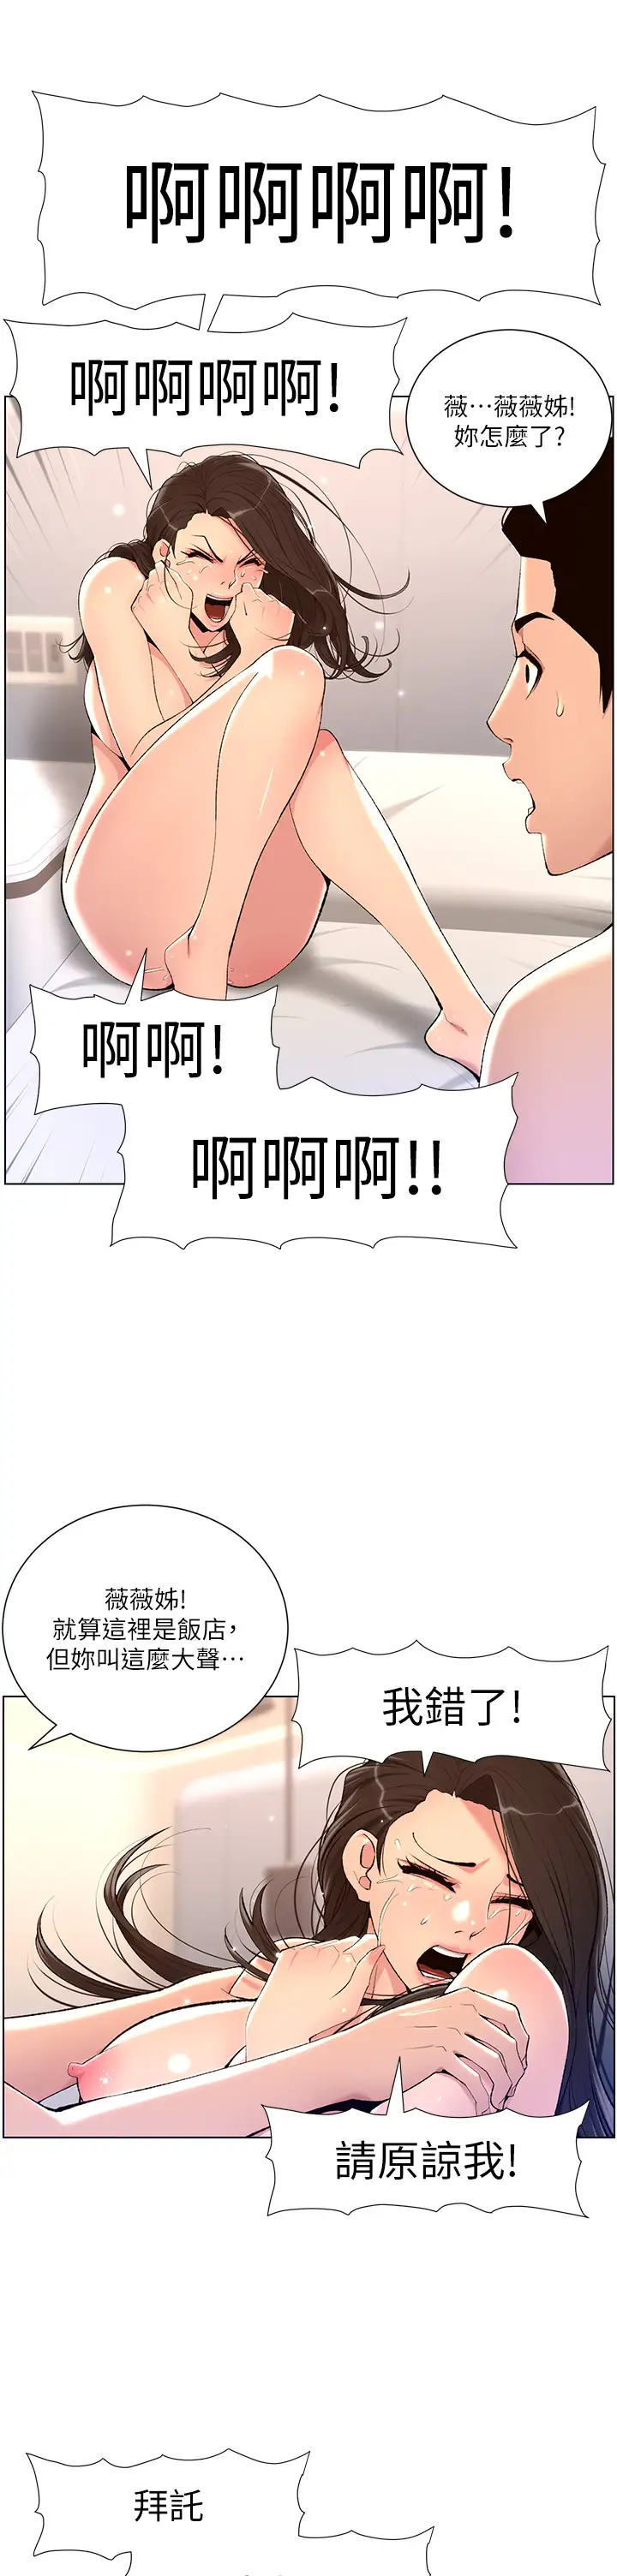 韩国污漫画 帝王App 第22话 不断刷新纪录的高潮 24